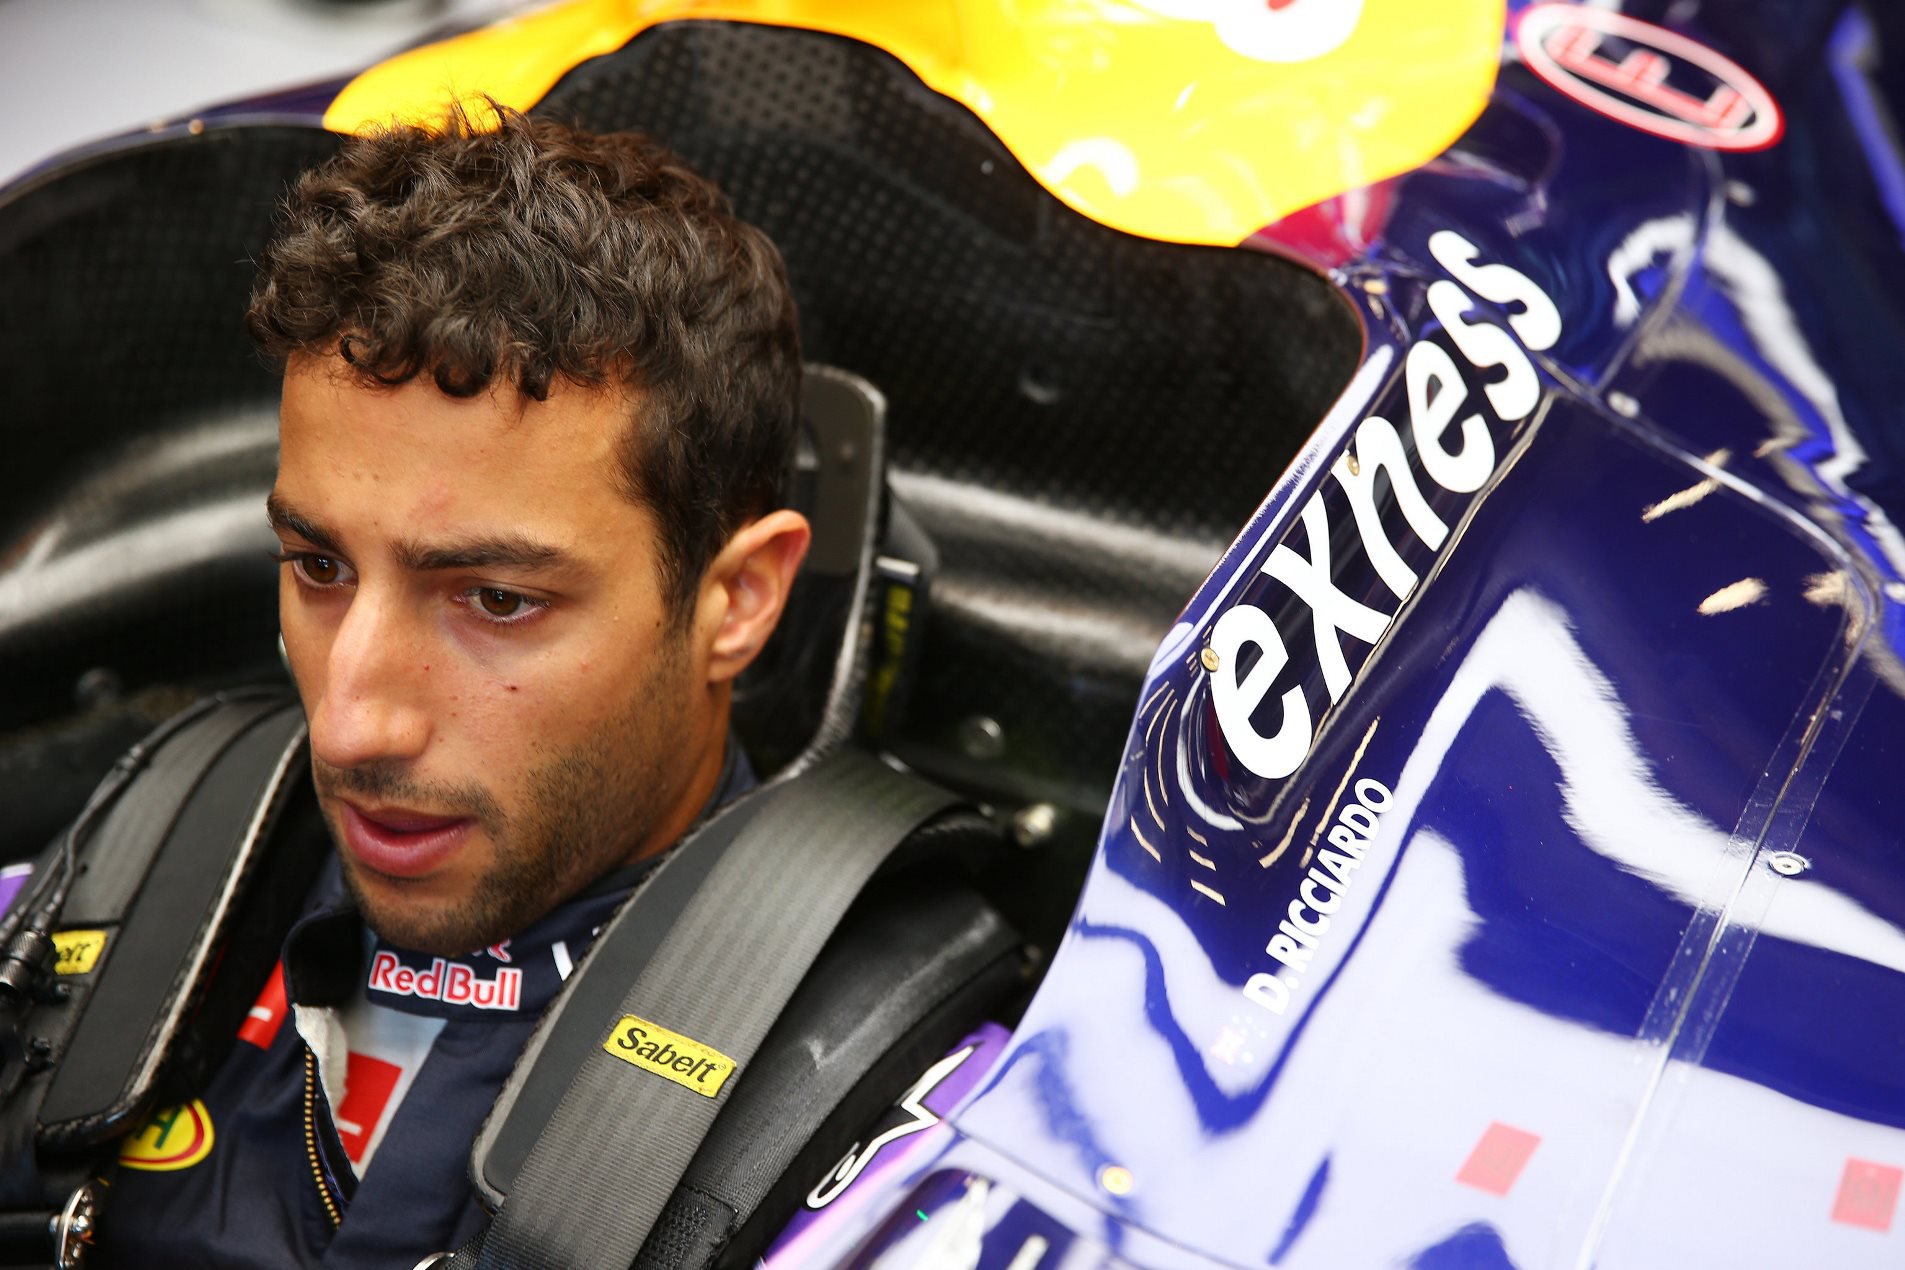 Daniel Ricciardo v kokpitu monopostu Red Bull při kvalifikaci na GP Belgie 2015